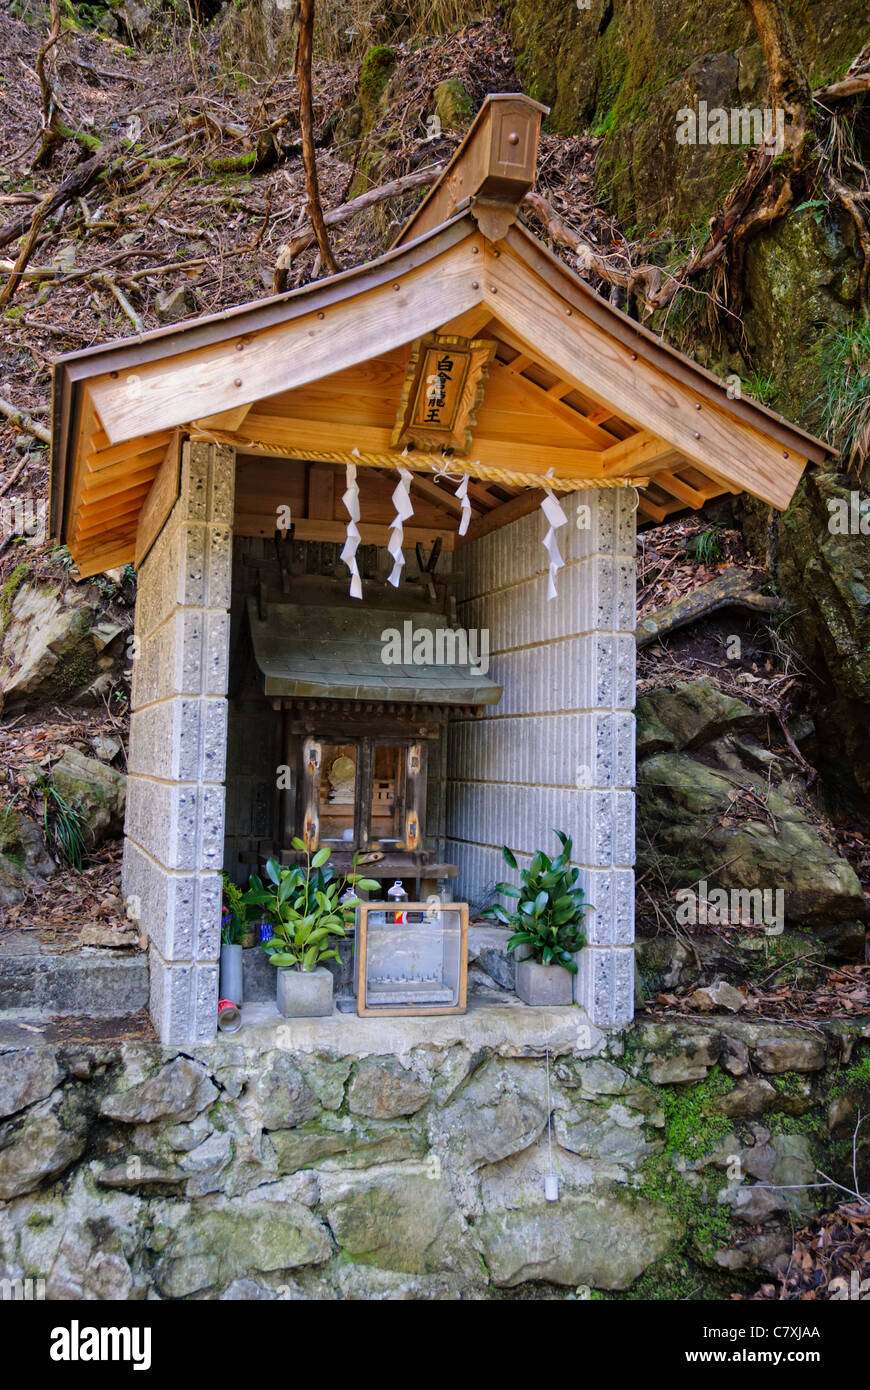 Hokora oder kleinen japanischen Shinto Bildstock in den Bergen von Japan Stockfoto